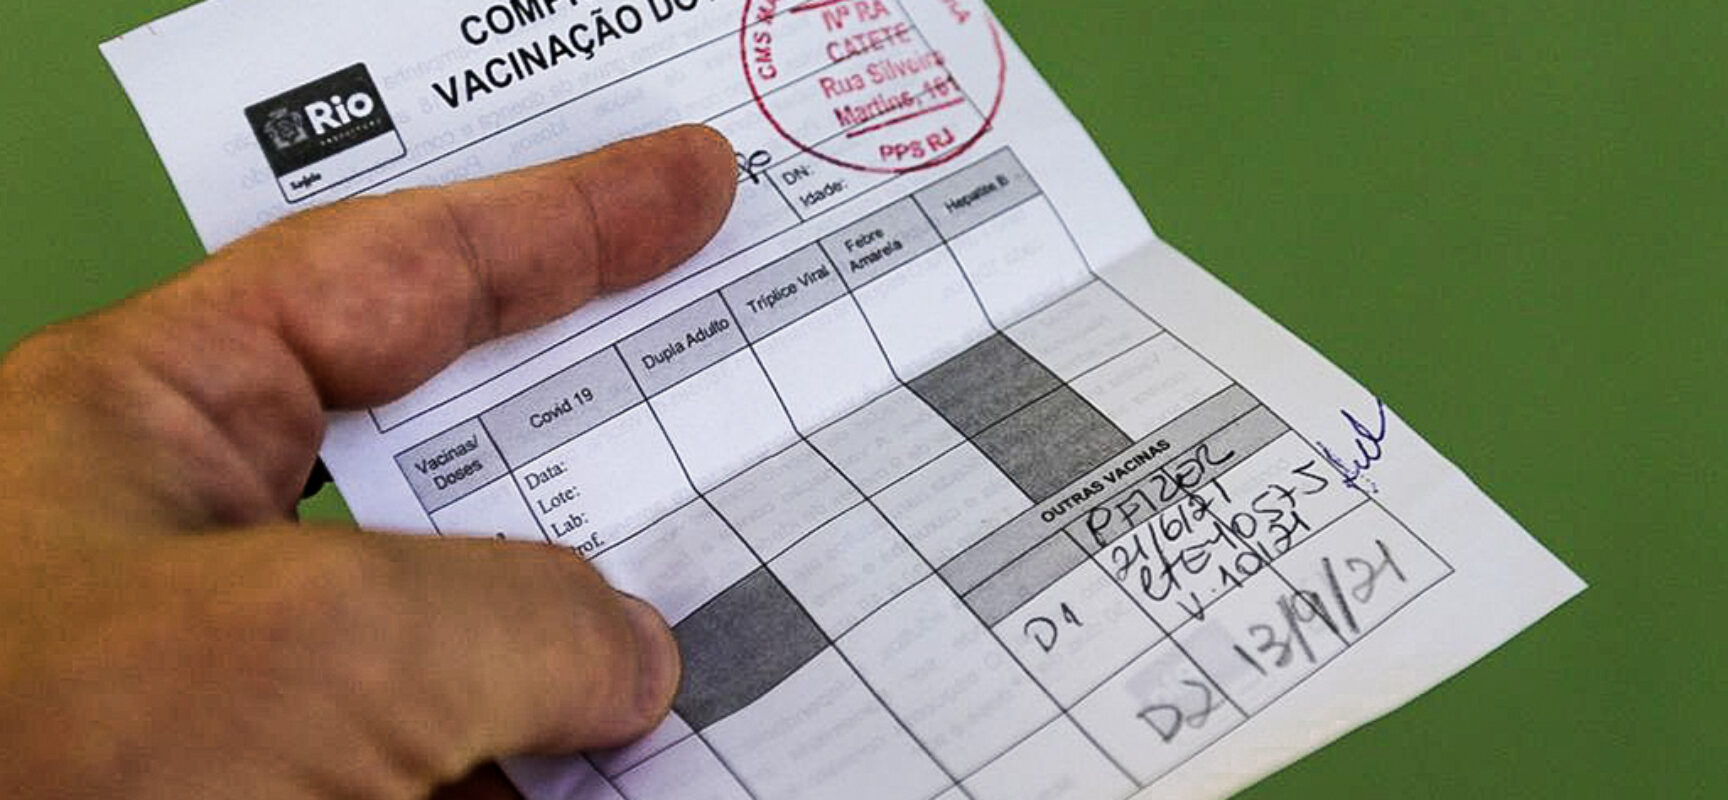 Prefeitura de Itabuna passa a exigir passaporte de vacinação para acesso aos prédios públicos